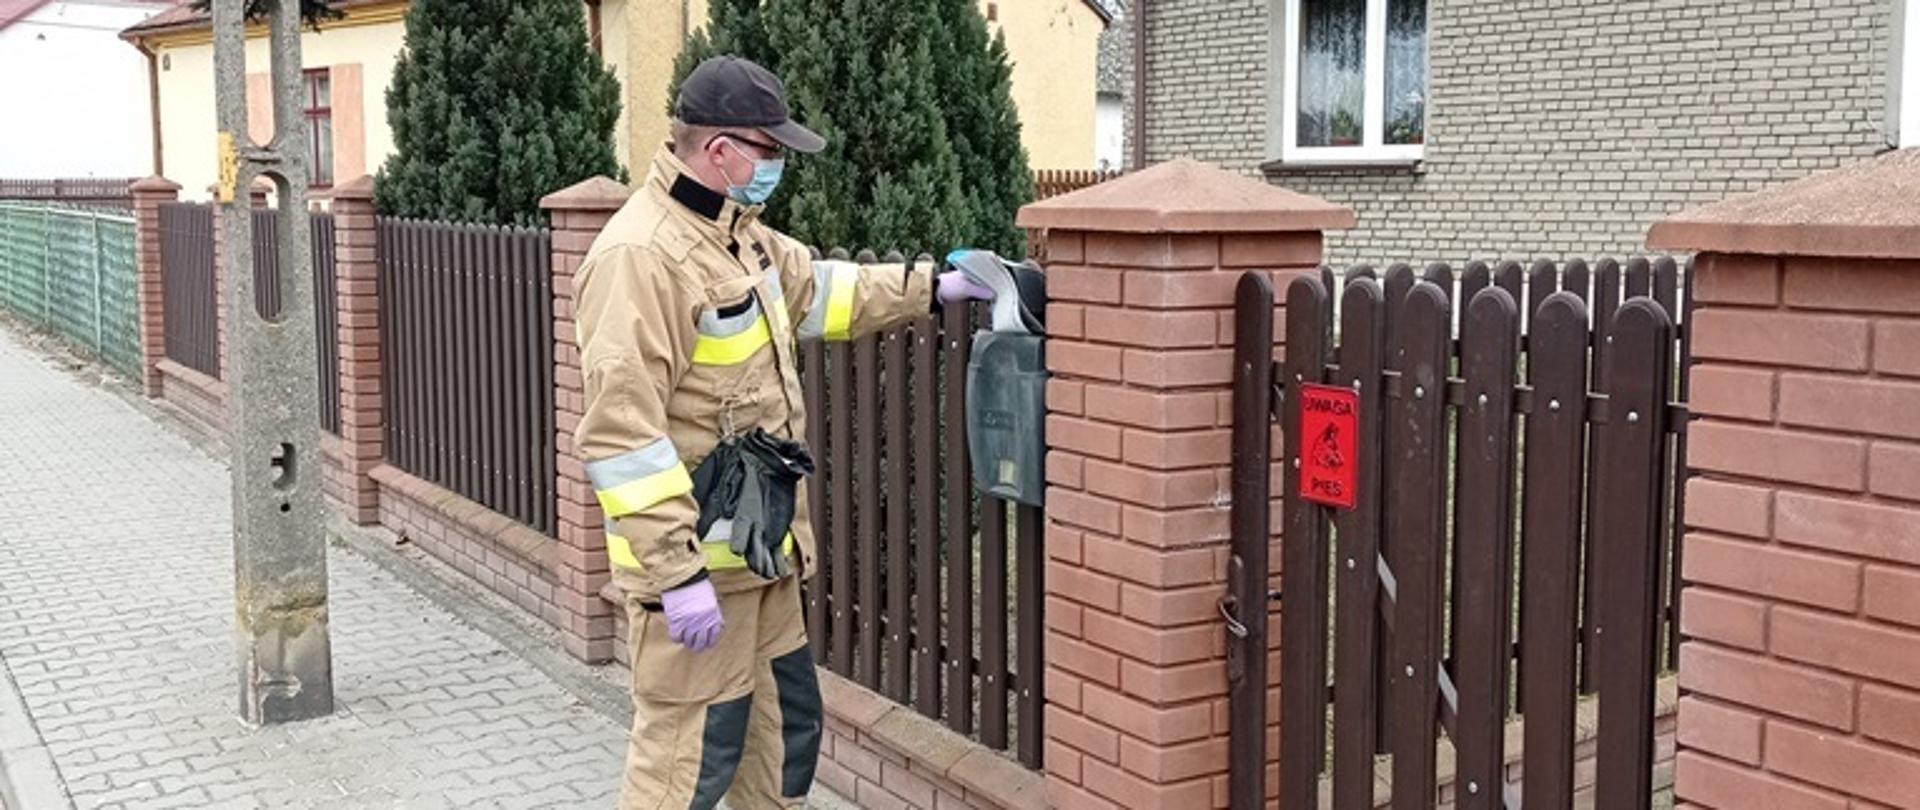 Strażak wrzuca ulotkę do skrzynki na listy znajdującej się na ogrodzeniu posesji 